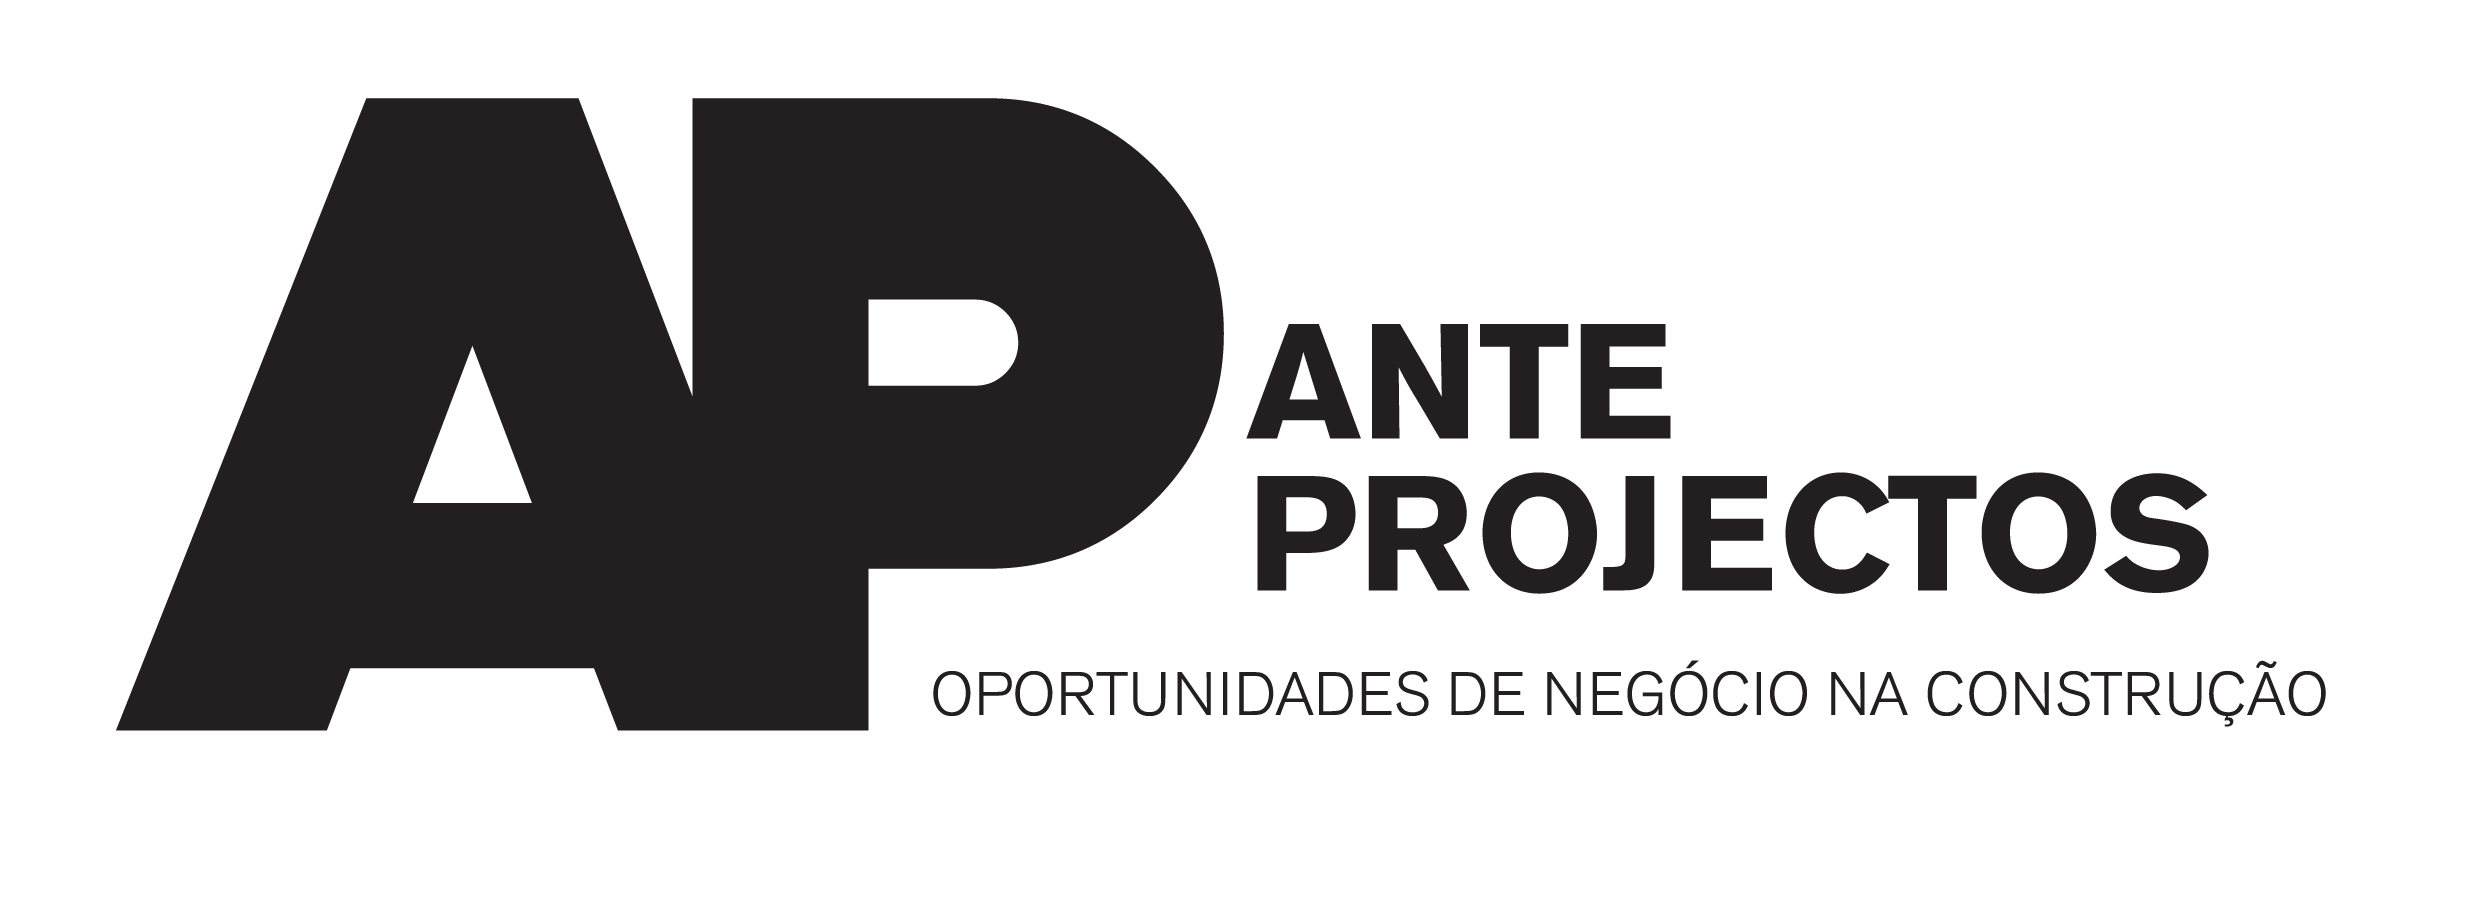 (c) Anteprojectos.com.pt